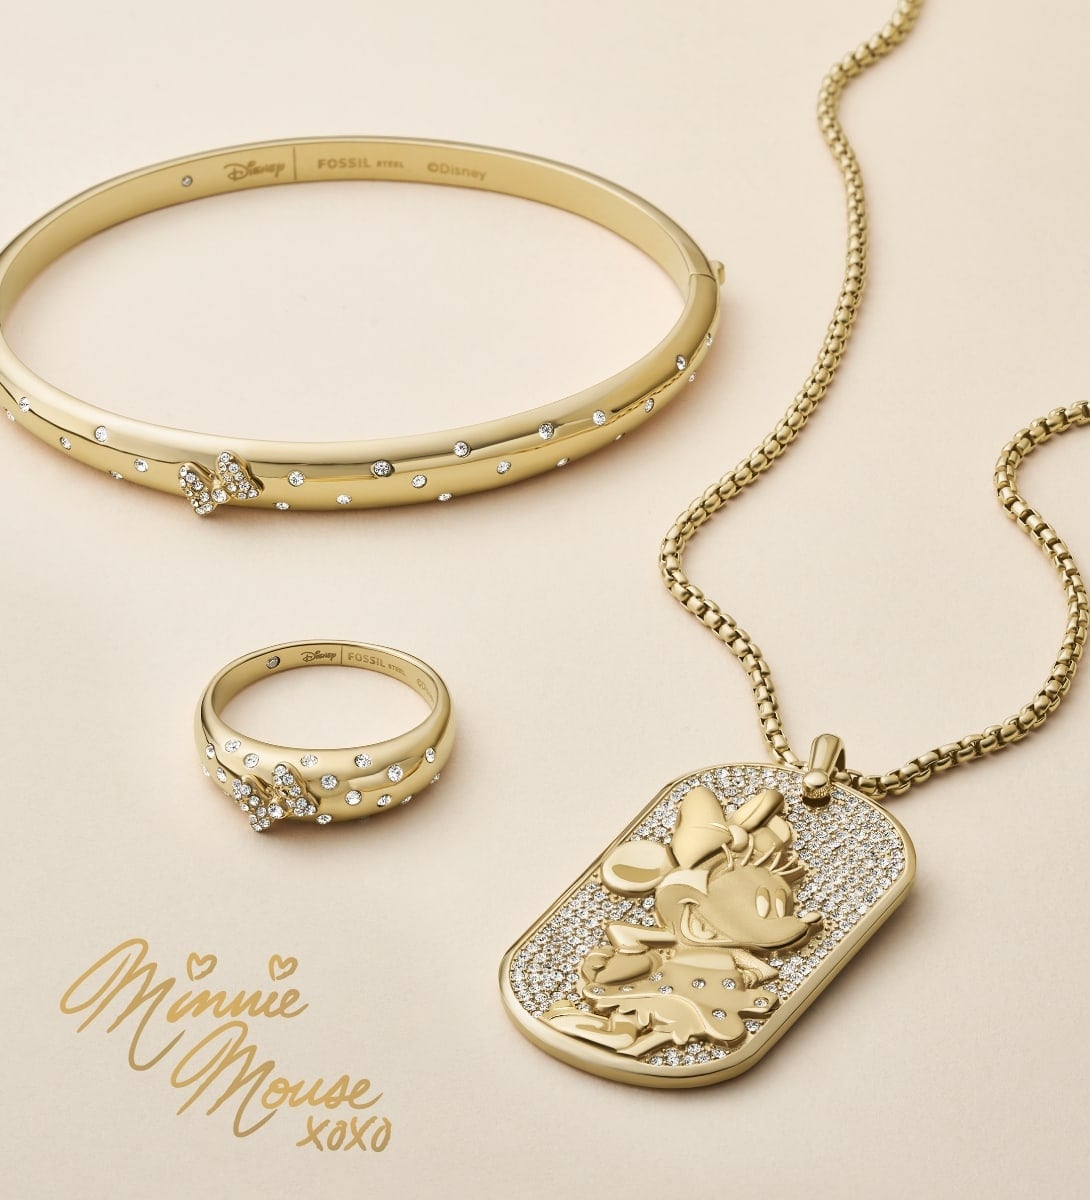 Tre gioielli di Minnie Mouse color oro, ciascuno impreziosito da cristalli luccicanti che ricordano il caratteristico fiocco e i suoi pois. Un bracciale rigido, un anello e una collana con piastrina sono disposti in modo artistico su uno sfondo color crema. La firma di Minnie è in color oro, insieme ai cuori e ai simboli x e o.